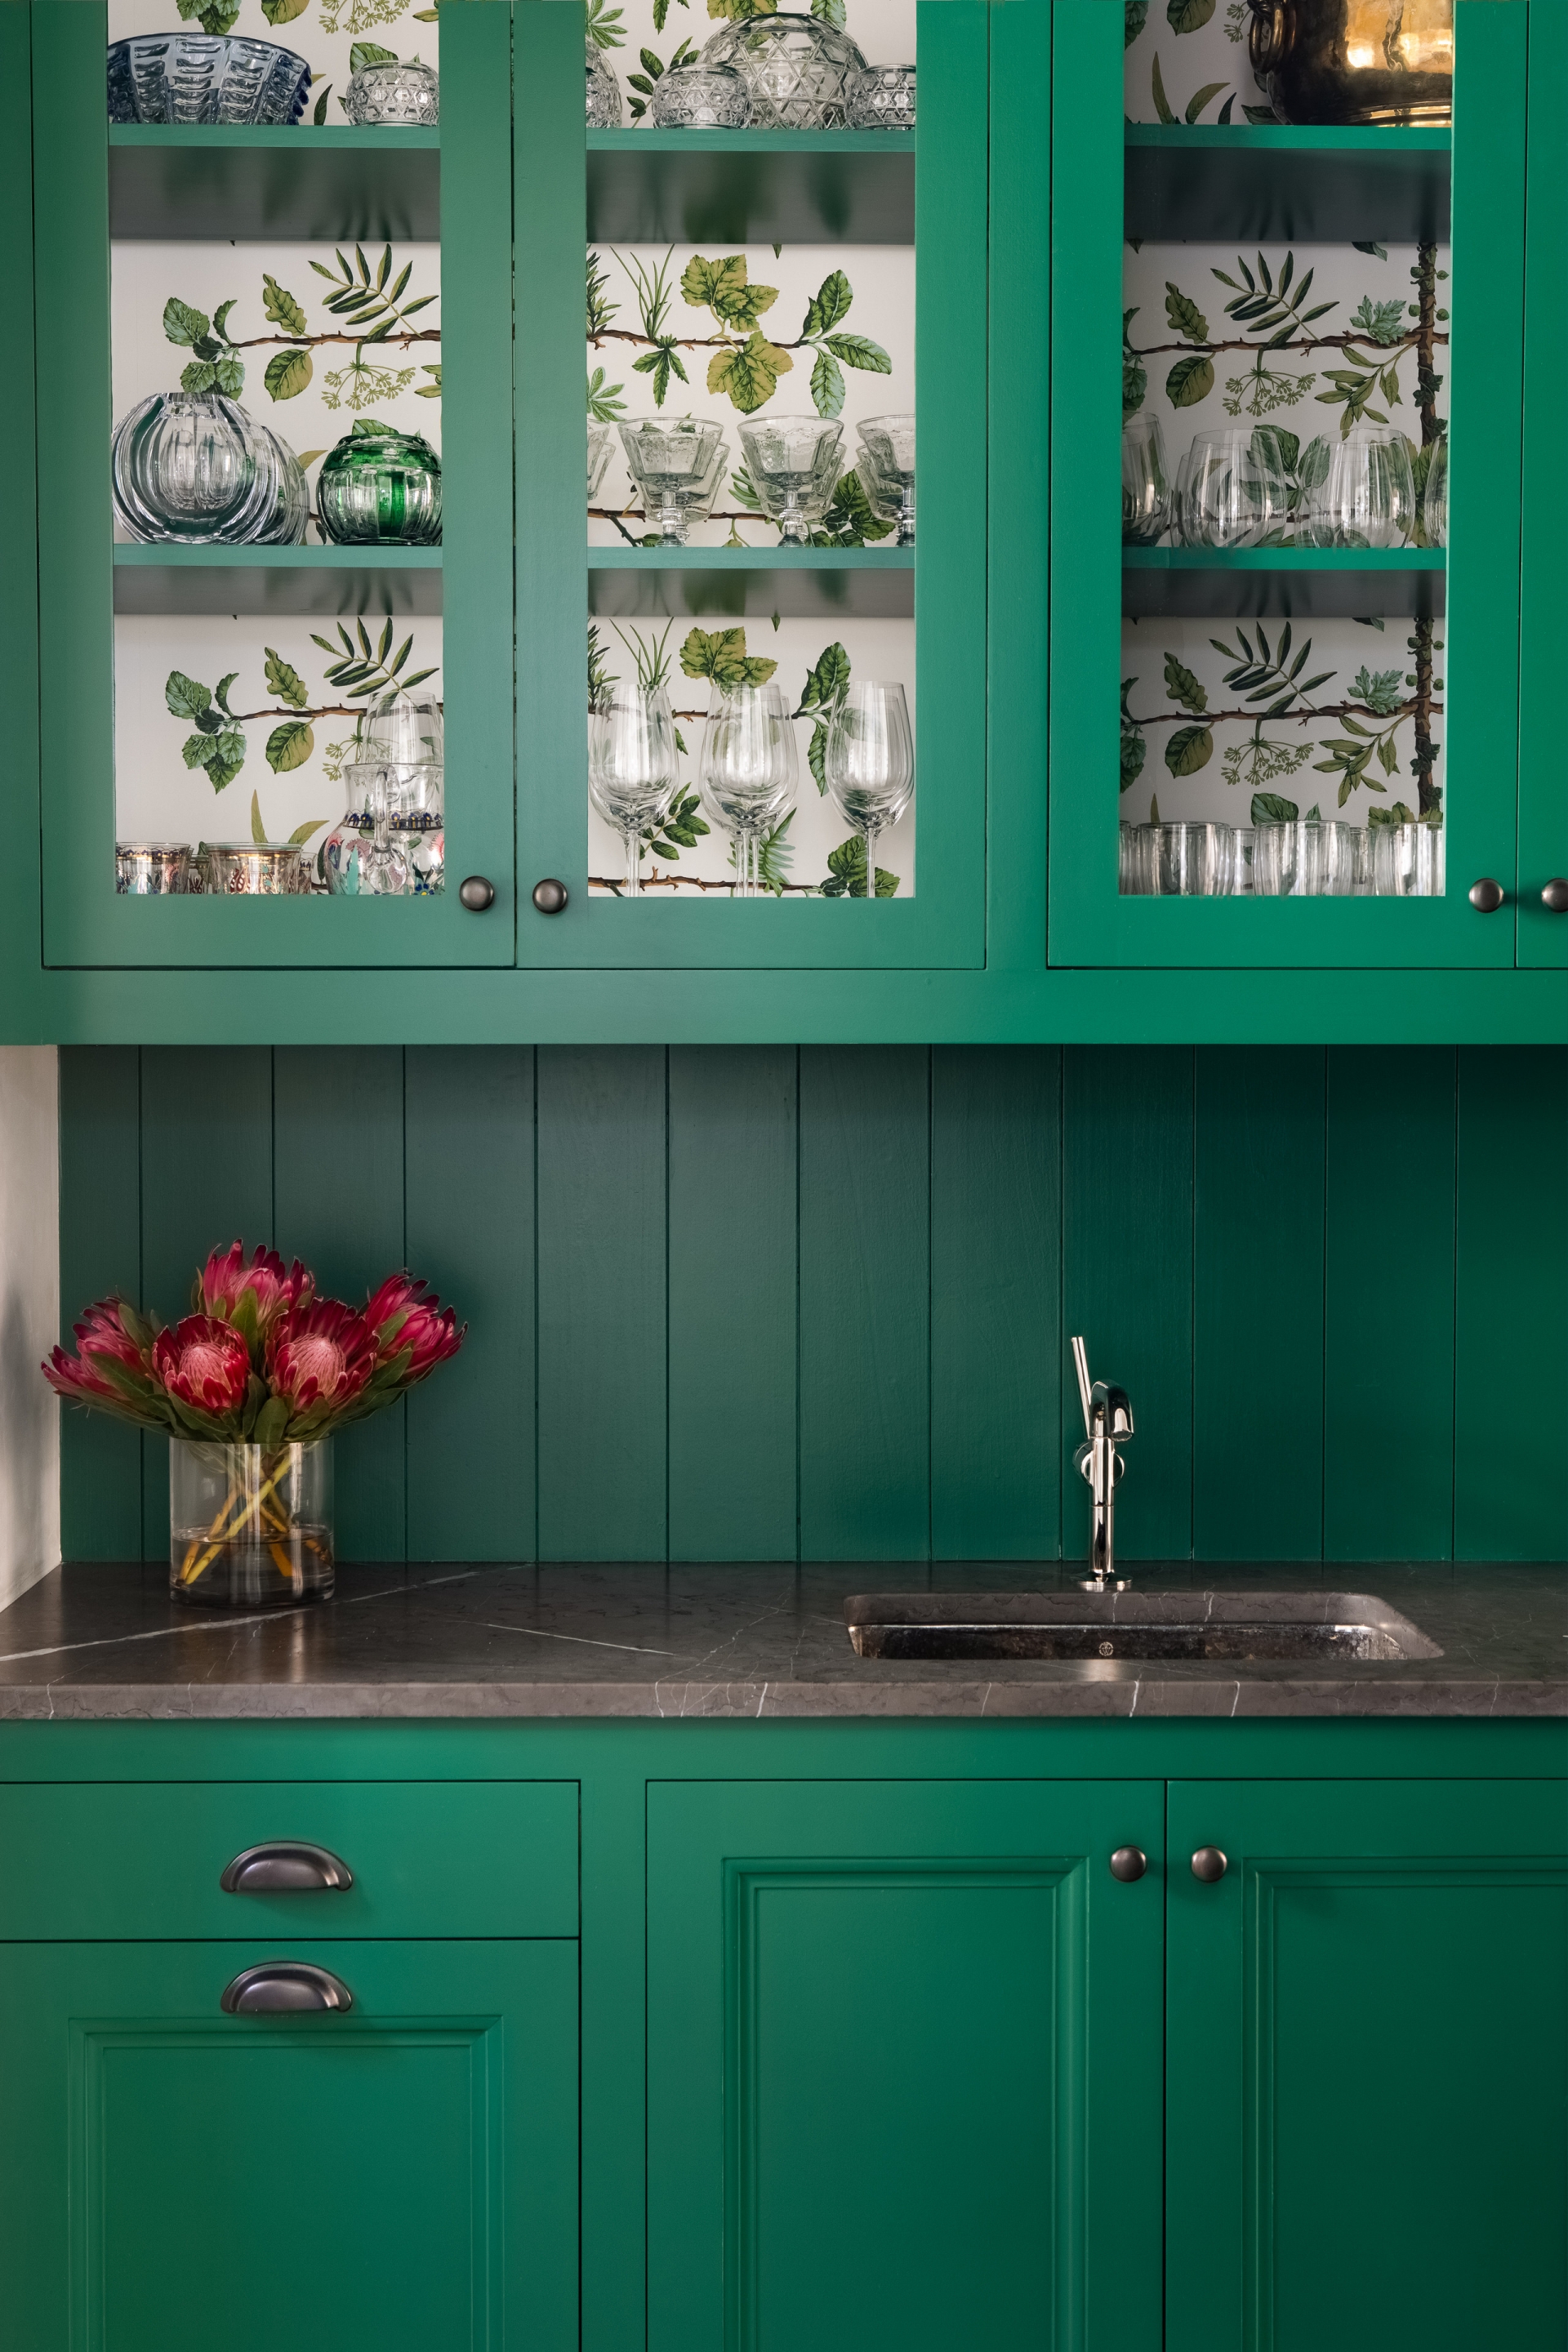 Nếu bạn muốn thay áo mới cho phòng bếp một cách nhanh chóng mà không tốn nhiều thời gian thì hãy sơn tủ bếp màu xanh ngọc lục bảo, đồng thời sử dụng giấy dán tường hoa lá xinh xinh lót phía trong tủ cửa kính như hình minh họa.